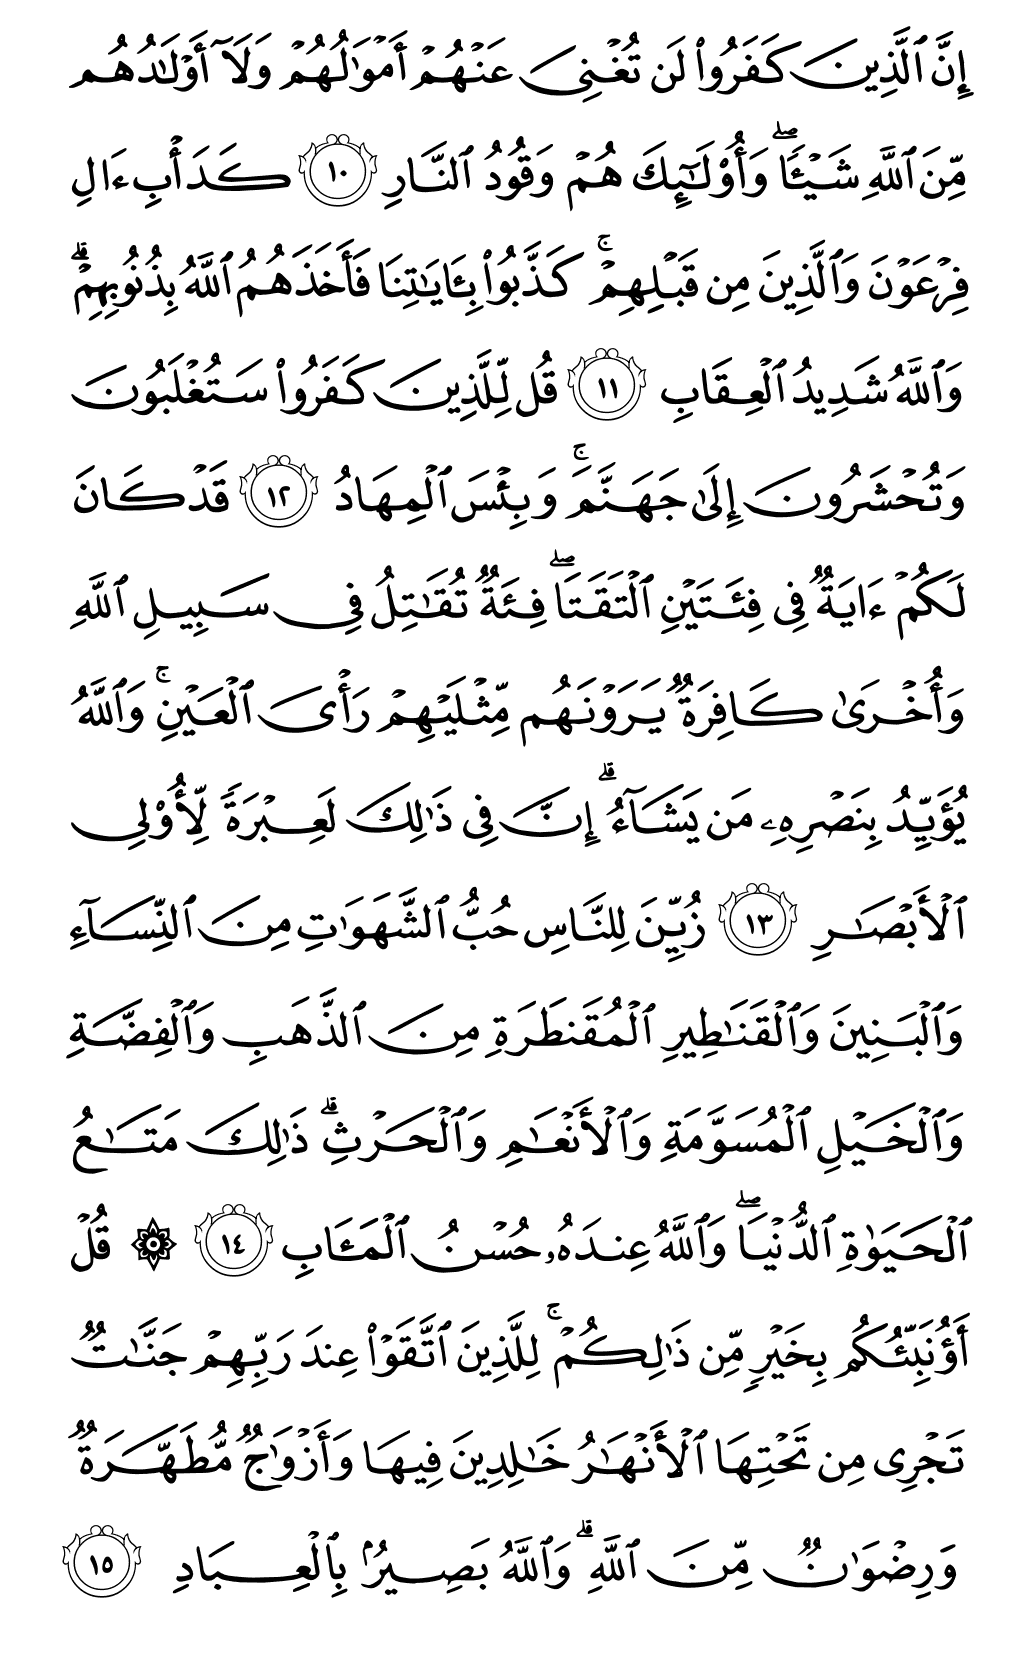 الصفحة رقم 51 من القرآن الكريم